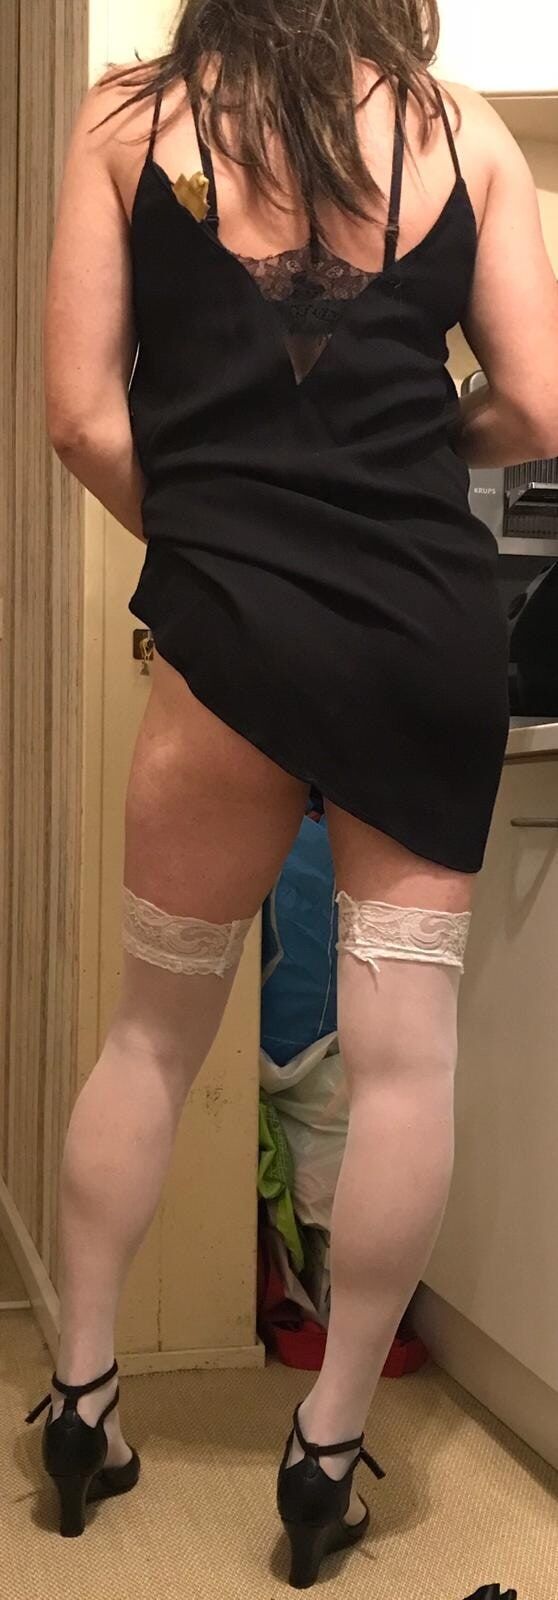 white stockings #32